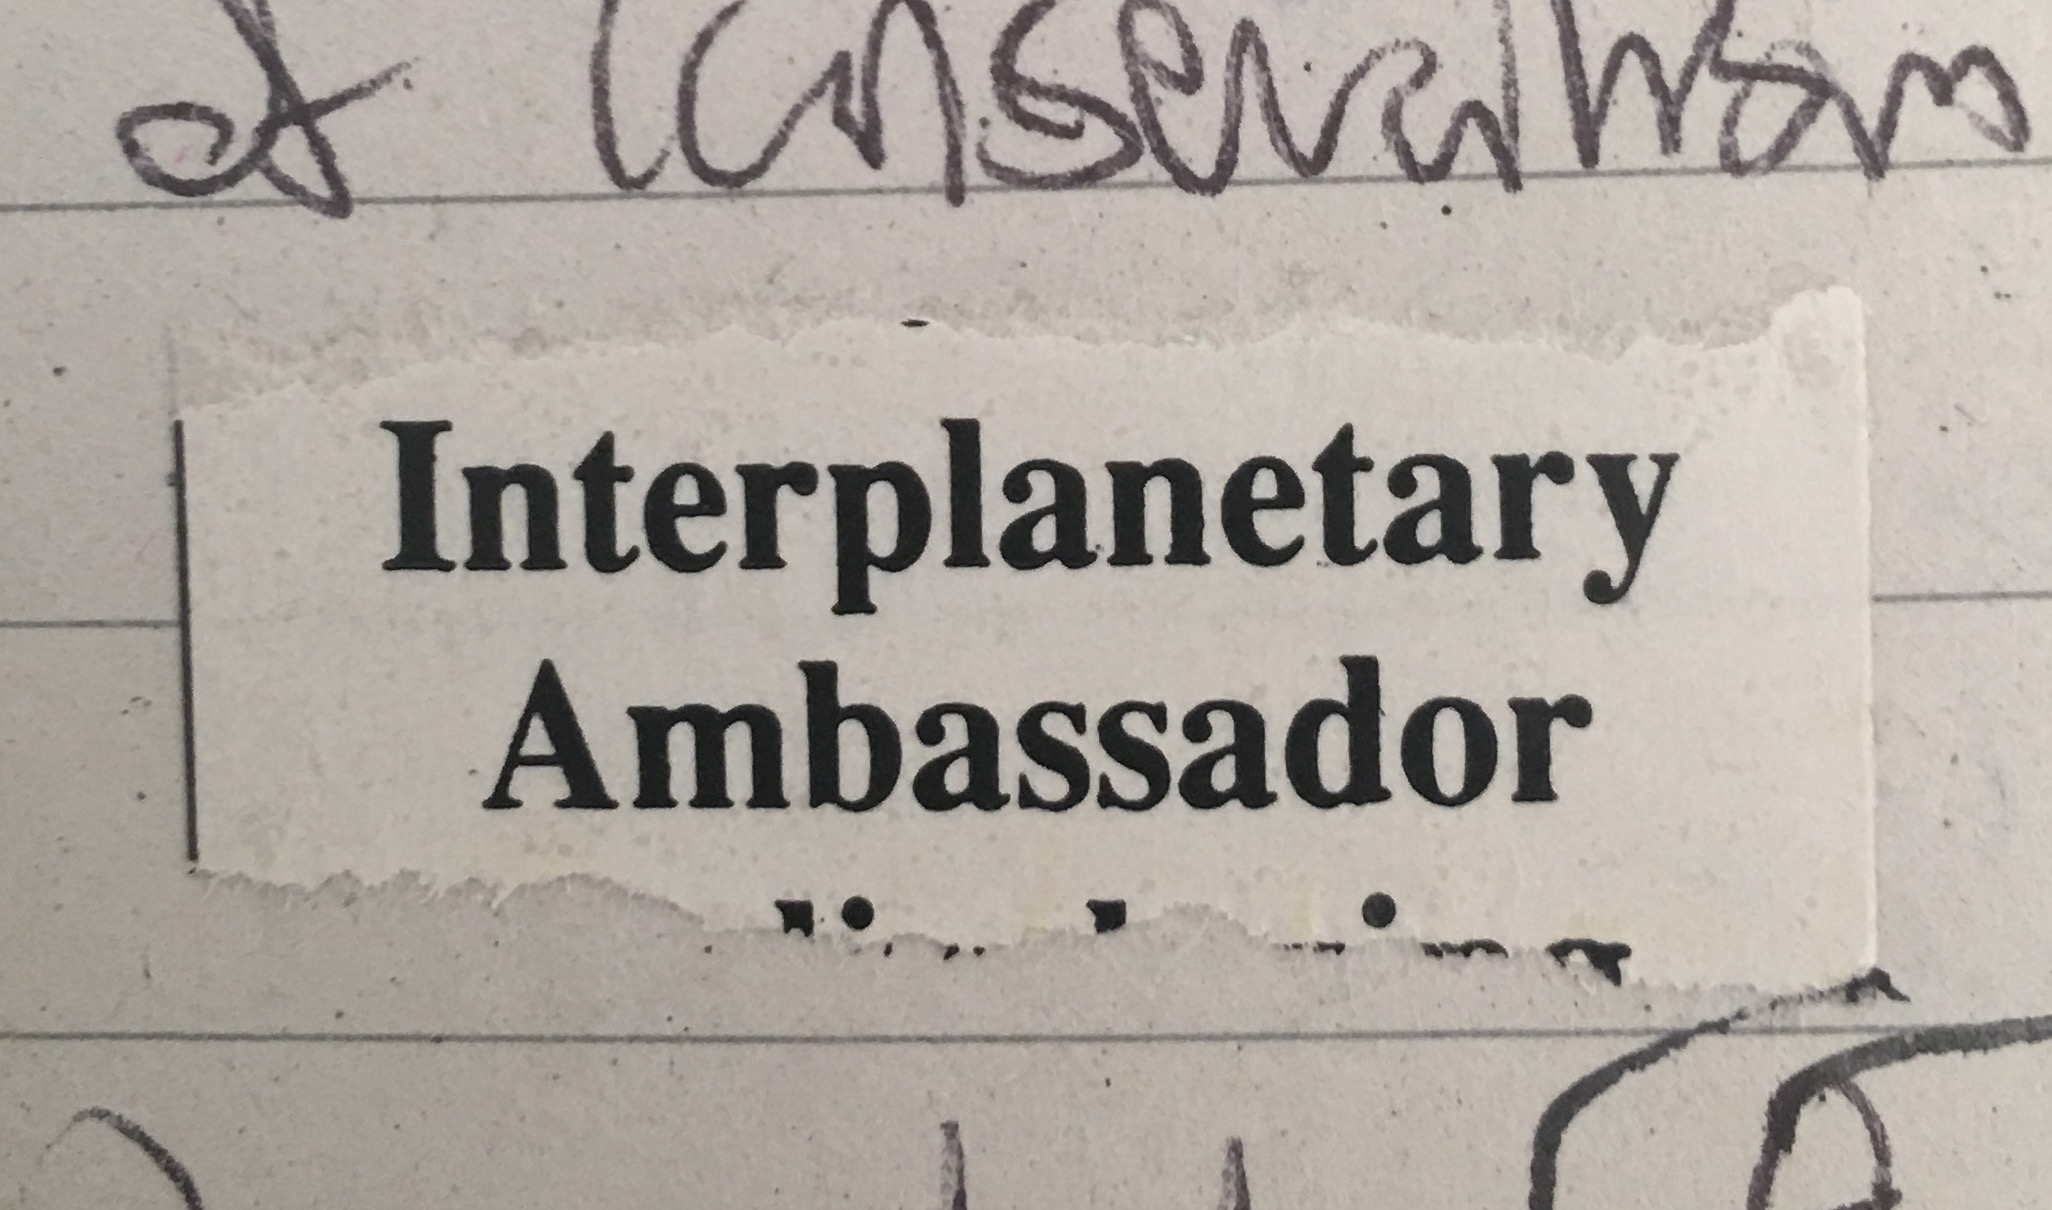 Interplanetary Ambassador